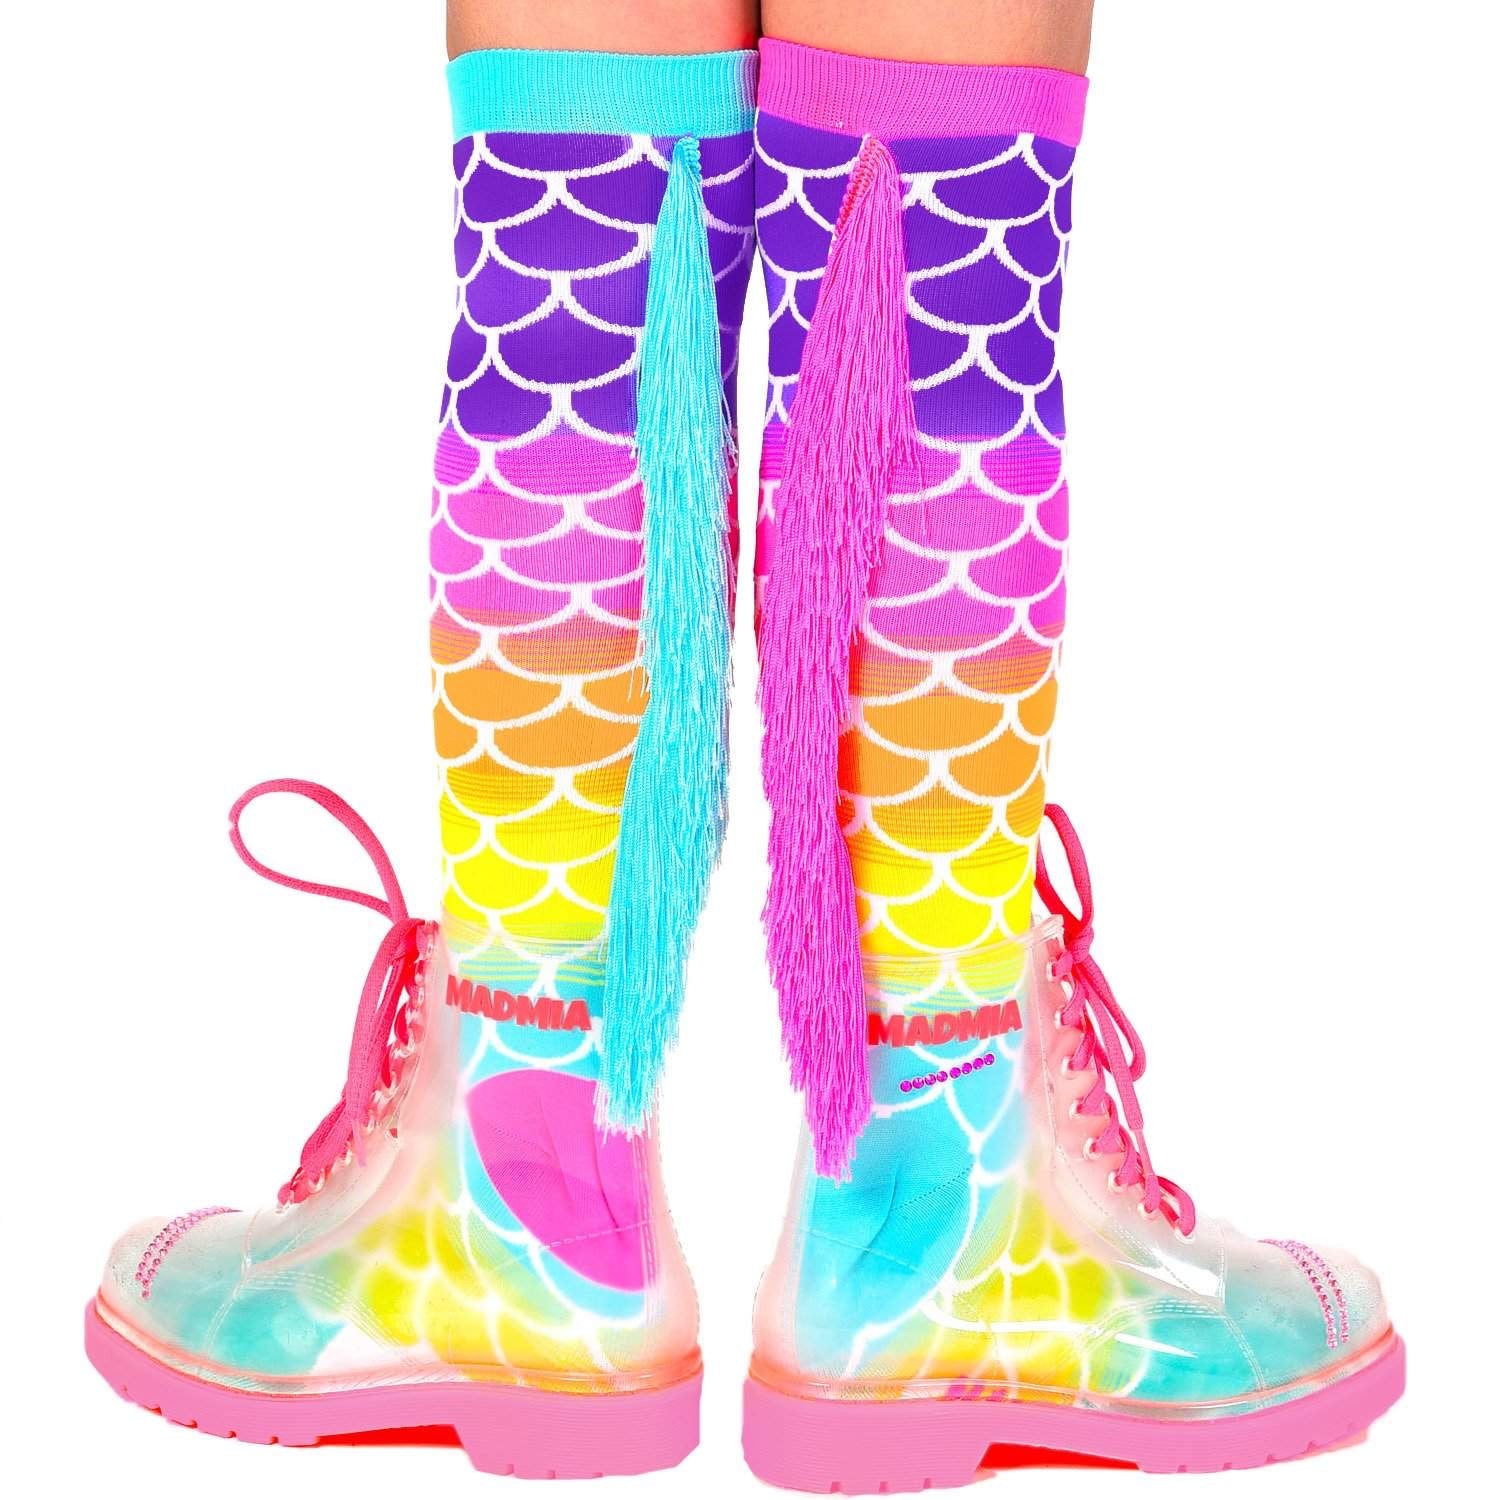 Mermaid Socks with Tassels